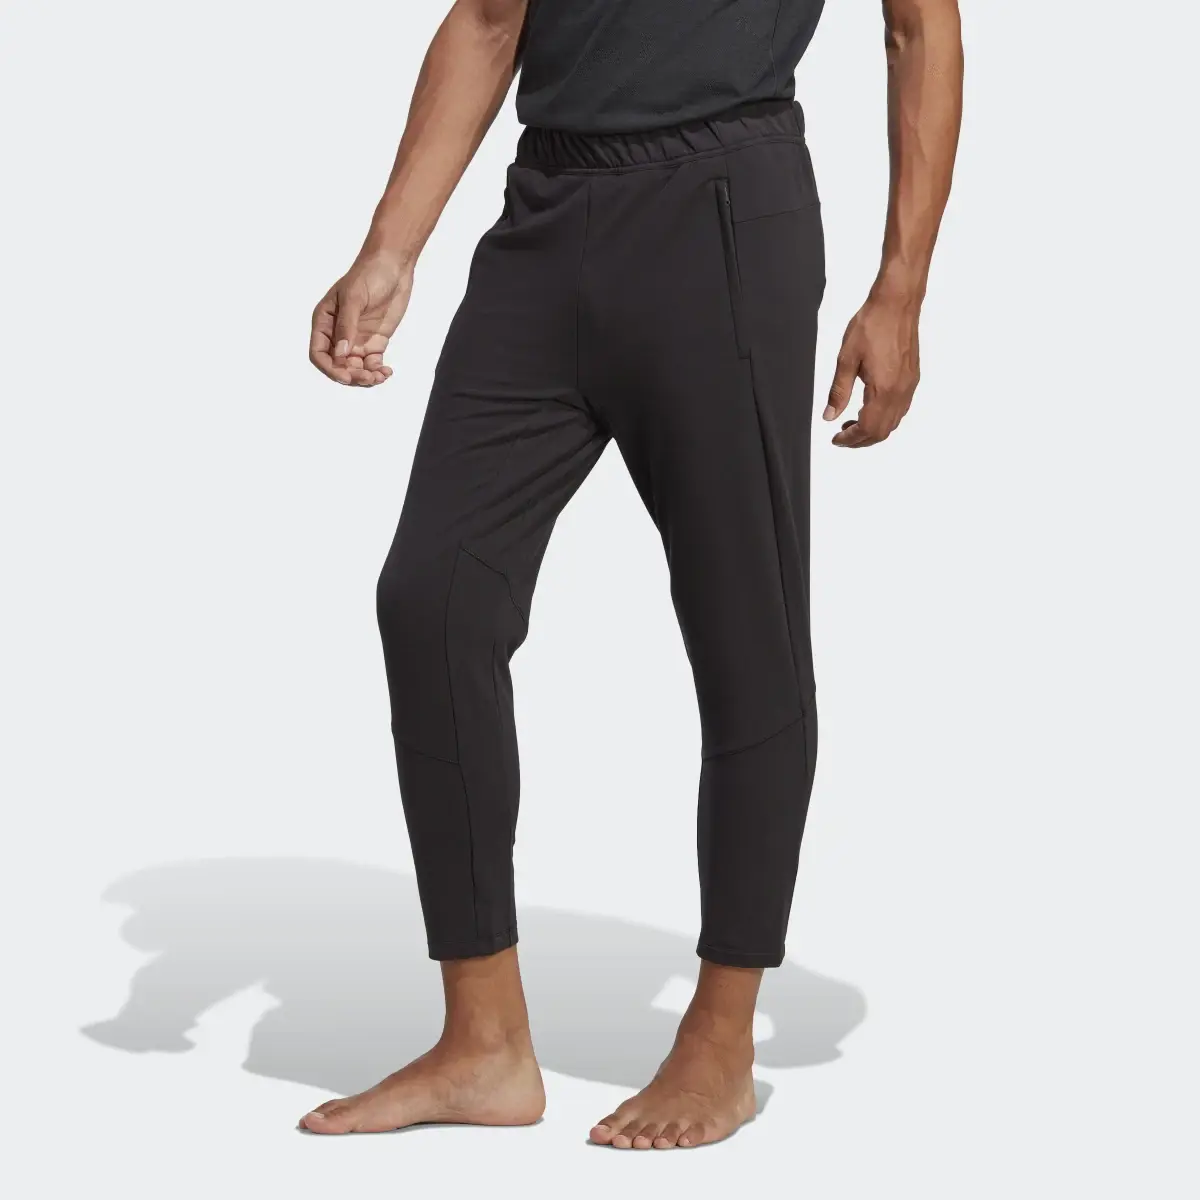 Adidas Designed for Training Yoga 7/8 Training Pants. 1